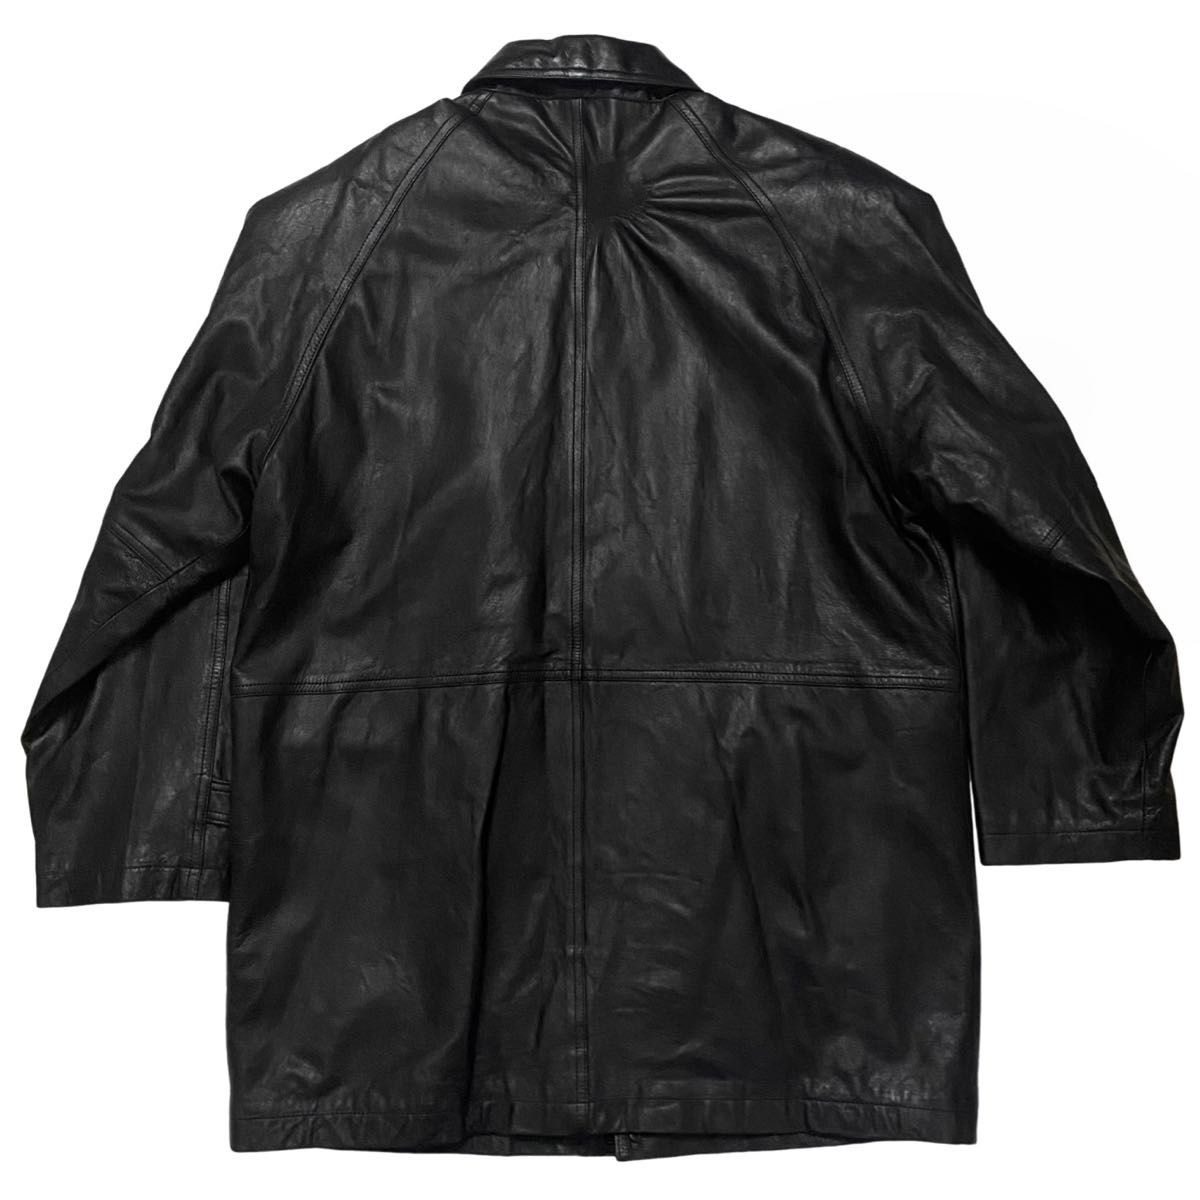 VINTAGE ヴィンテージ 90s レザー コート ジャケット アウター ビンテージ 古着 90年代 本革 ブラック 黒